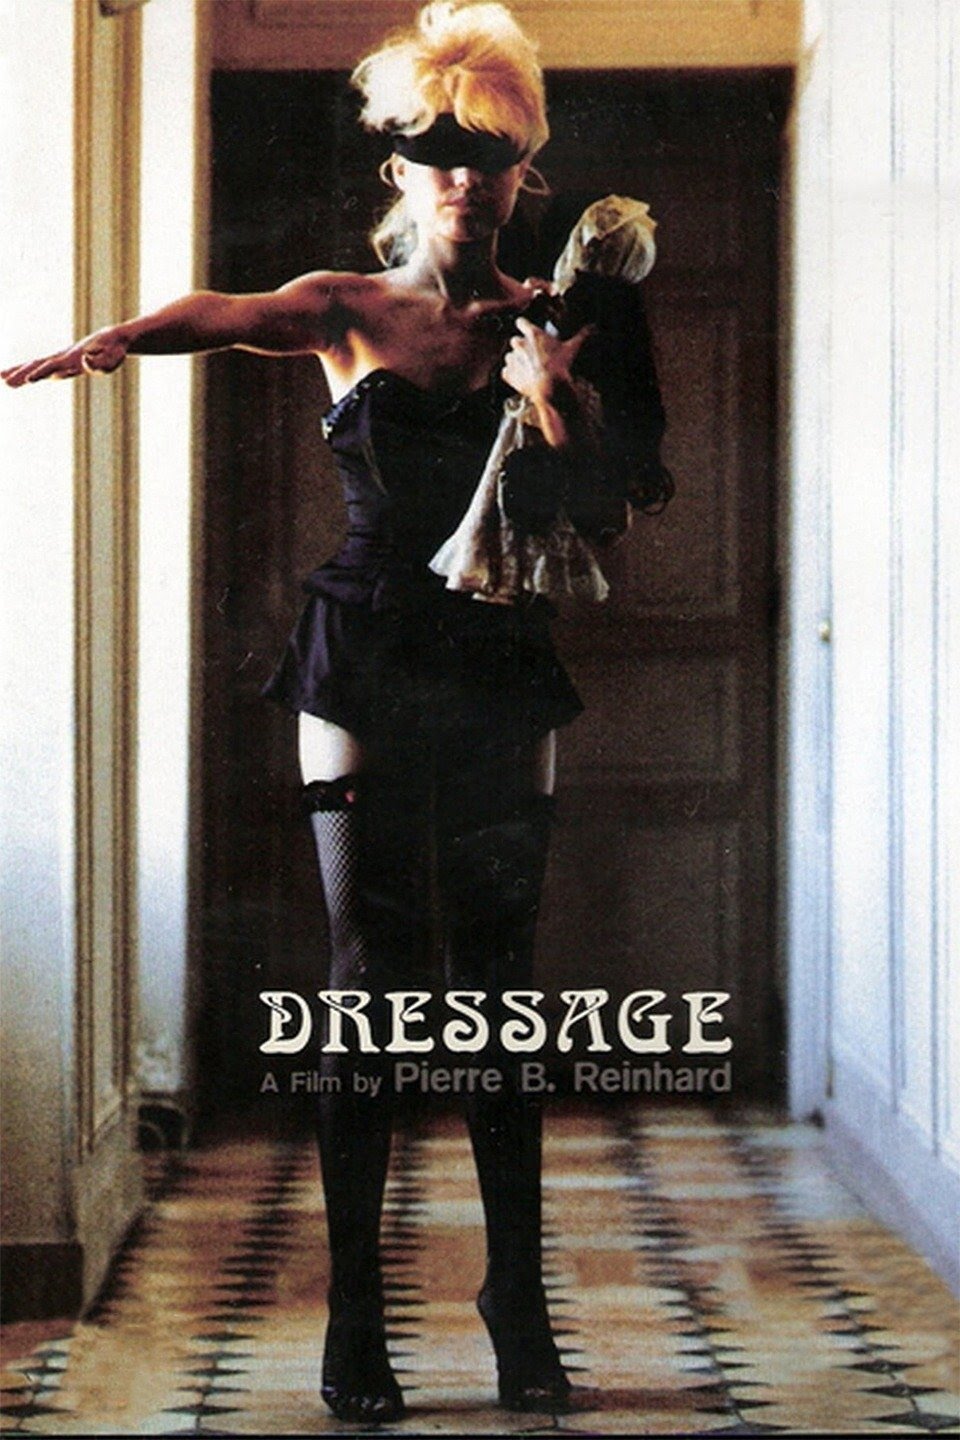 Dressage (1986) Screenshot 1